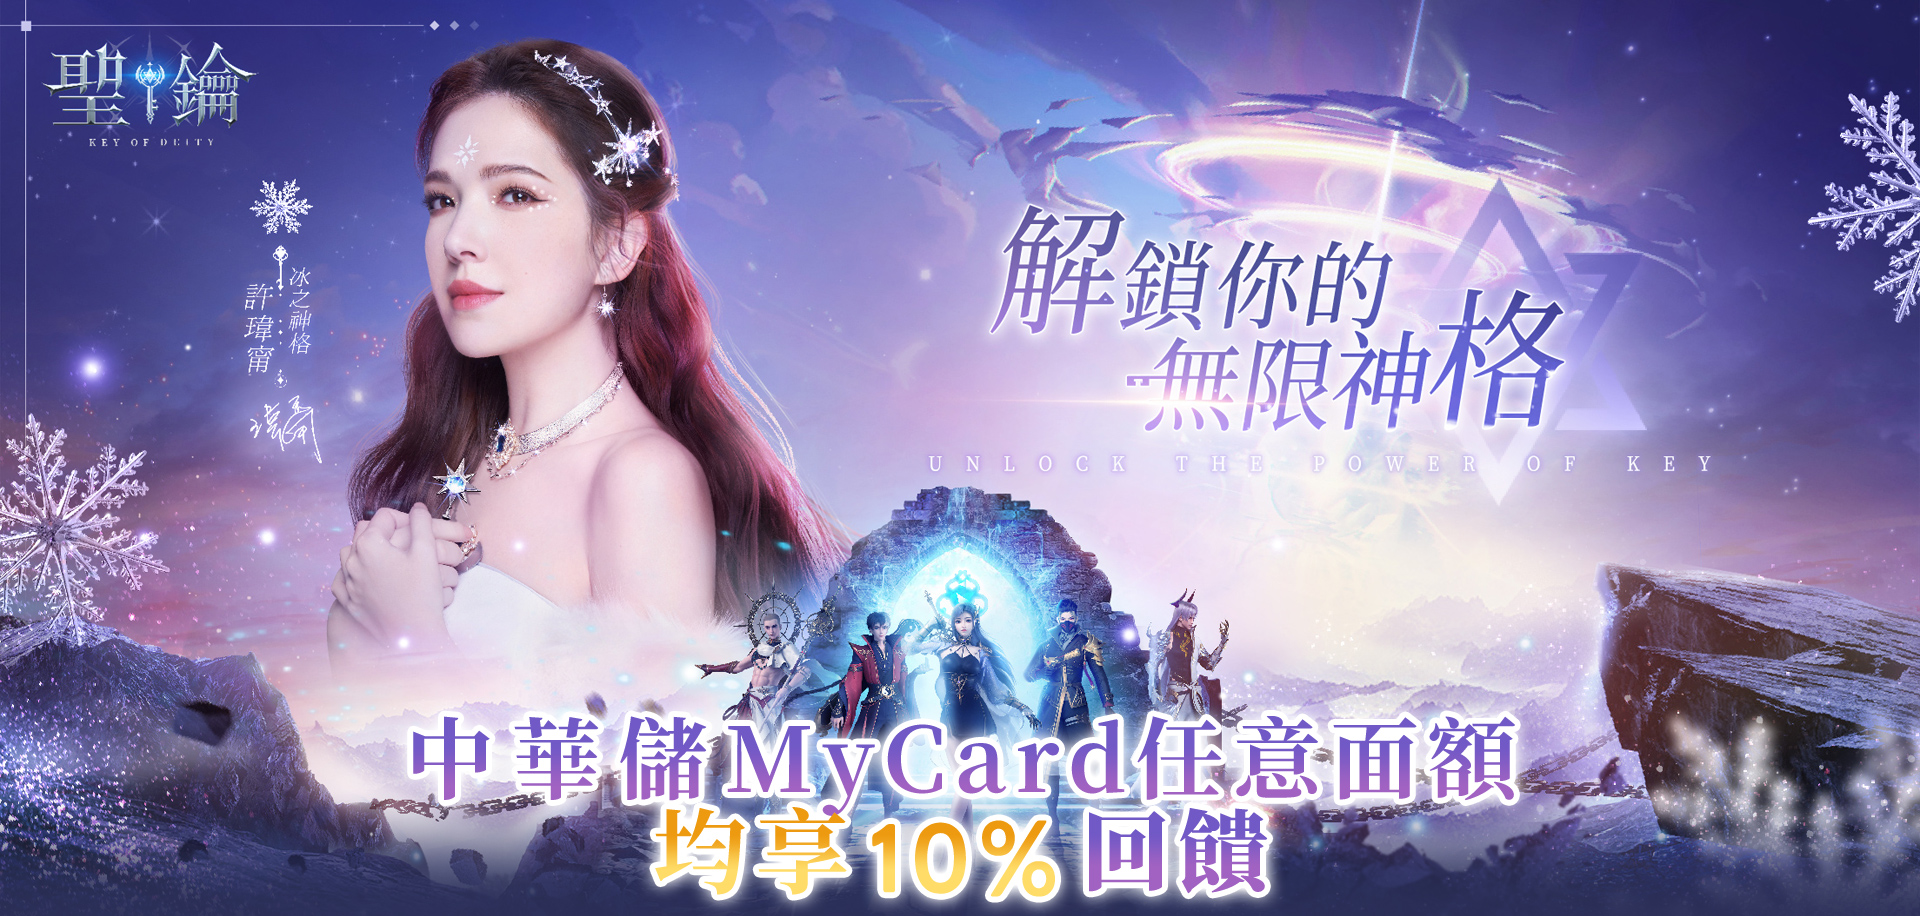   《聖鑰》MyCard儲值享超值好禮回饋 | 中華